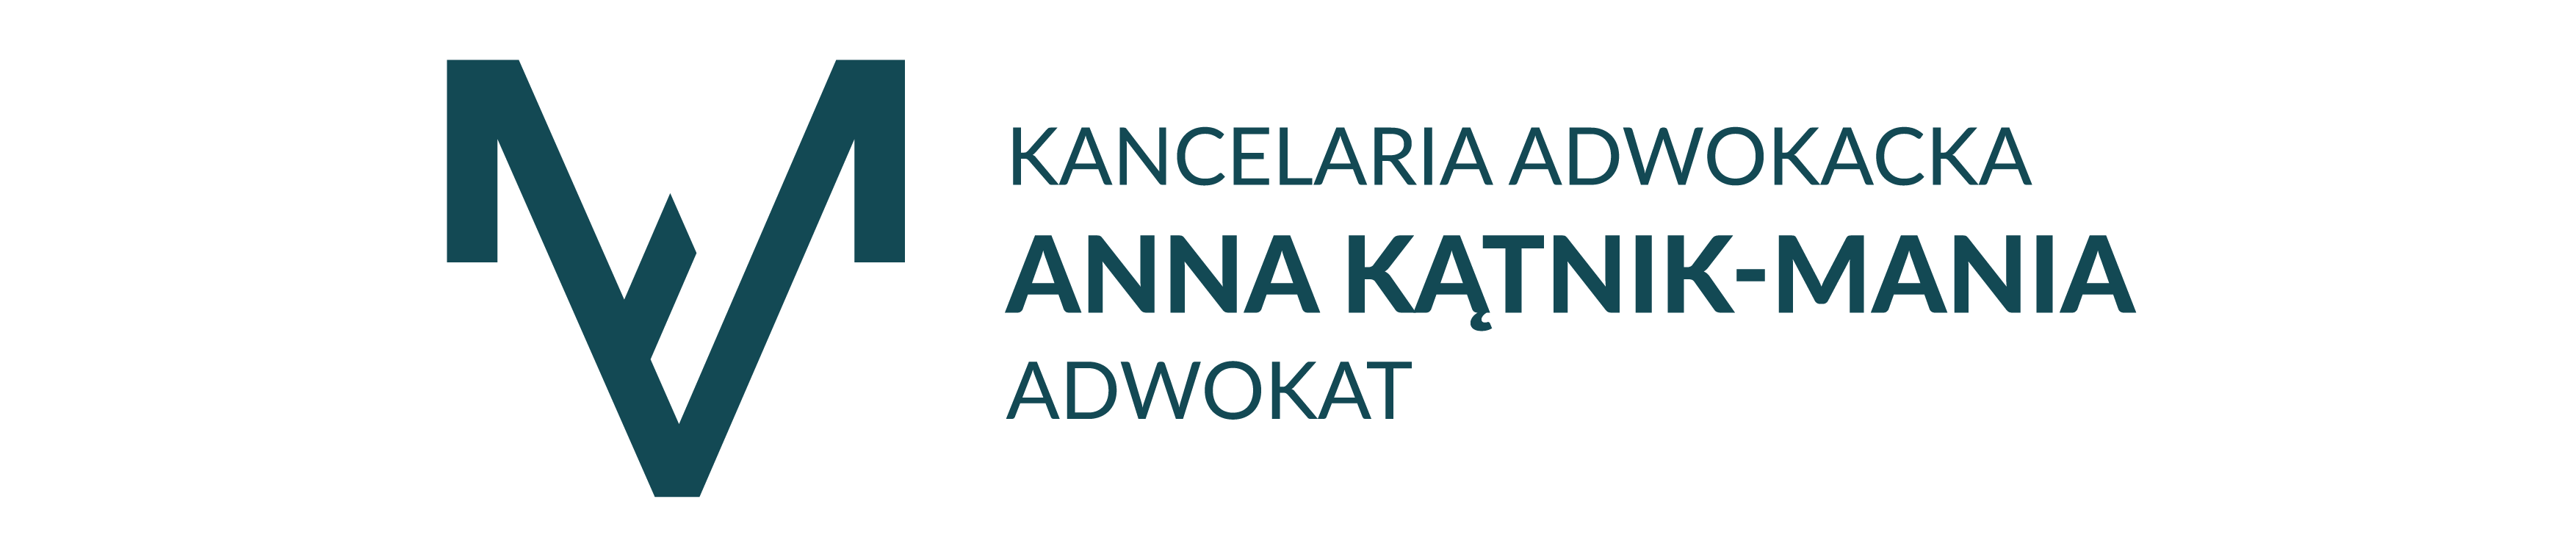 adwokat Anna Kątnik – Mania | Kancelaria adwokacka | Słupsk Słupsk